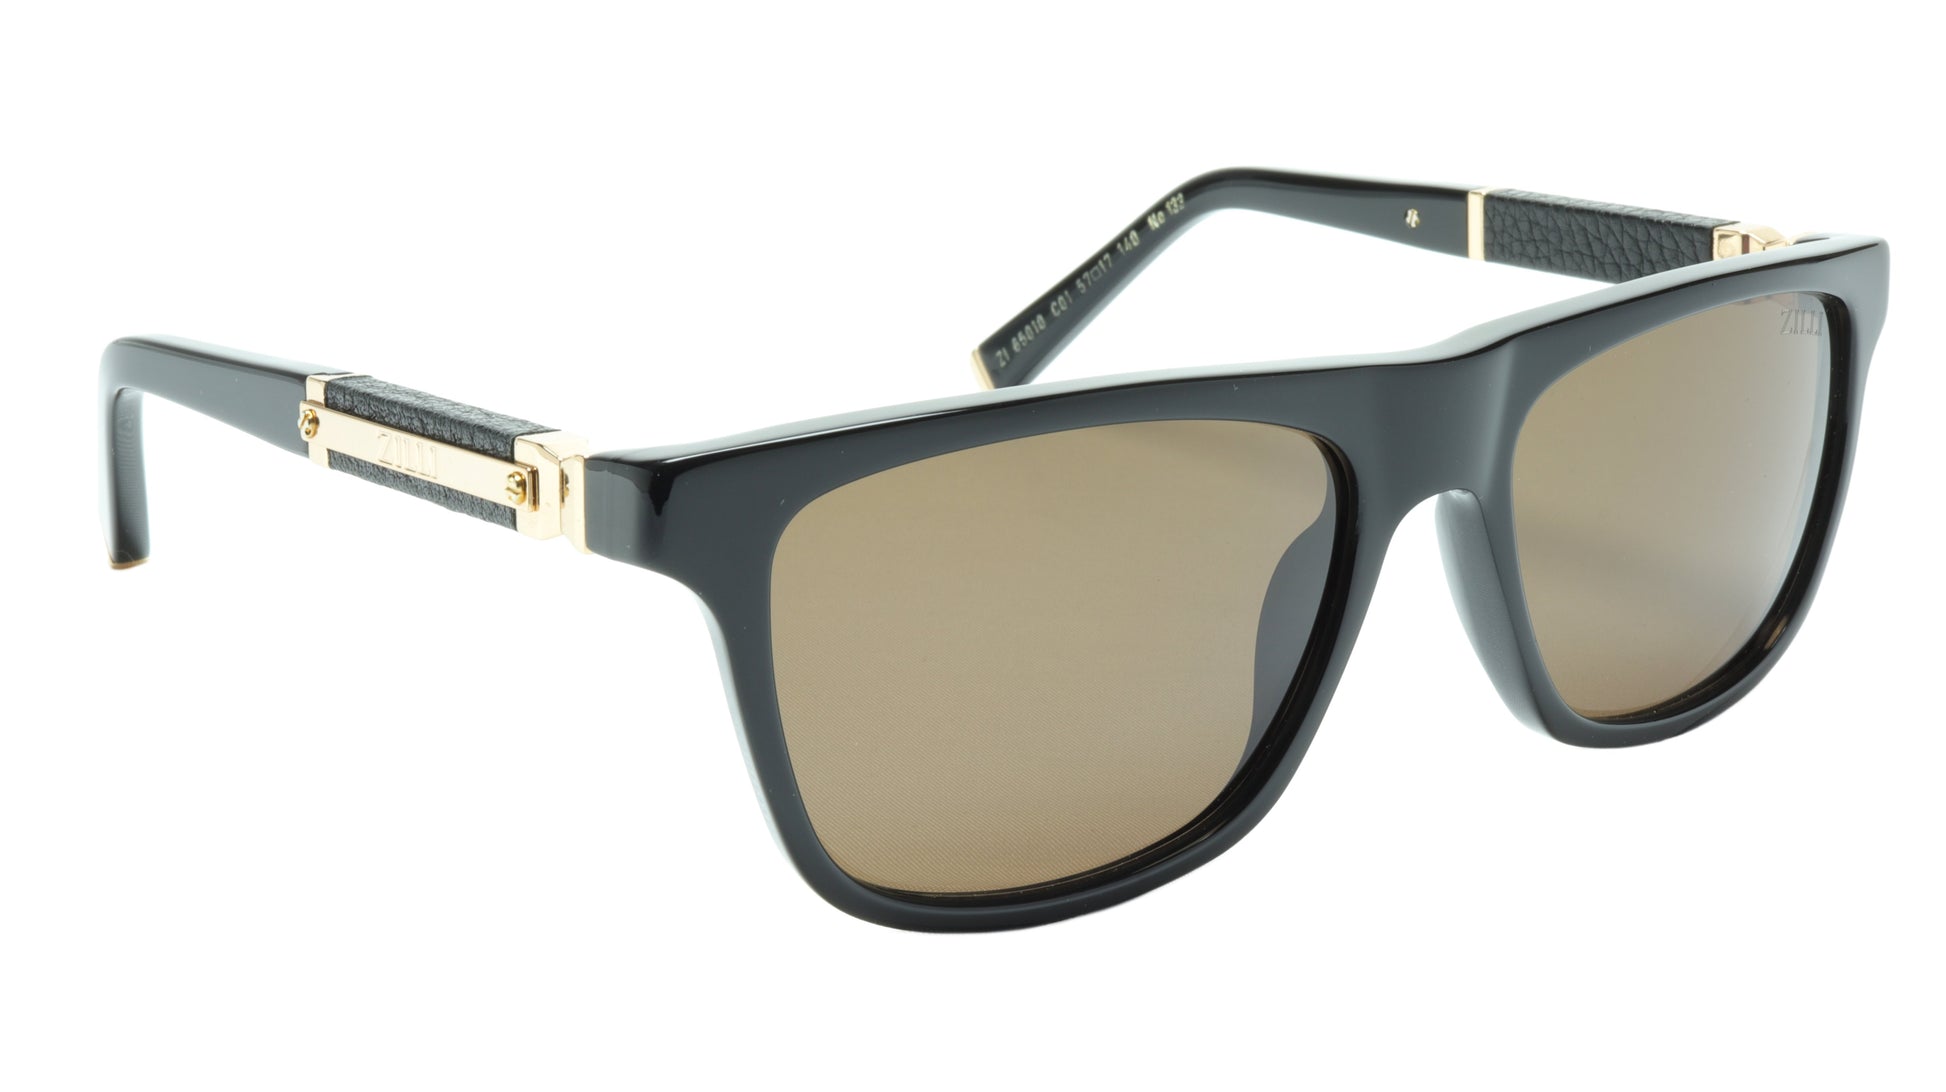 ZILLI Sunglasses Titanium Acetate Leather Gold Polarized France ZI 65010 C01 - Frame Bay